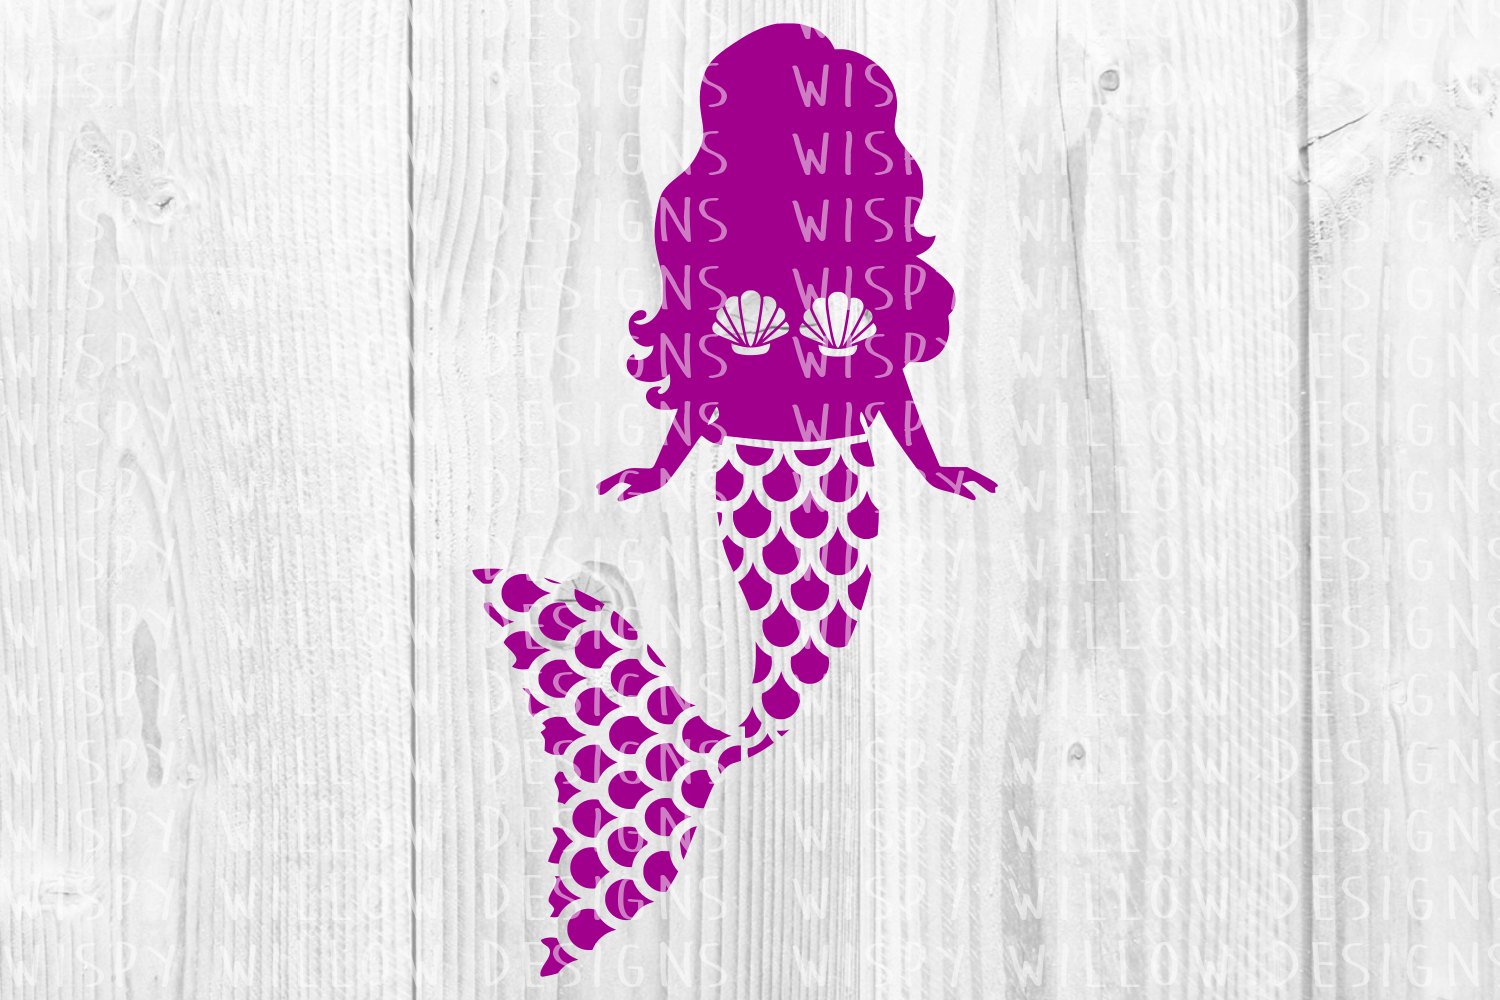 Download Mermaid Bundle, Mandala Mermaid, SVG Cut File (108659 ...